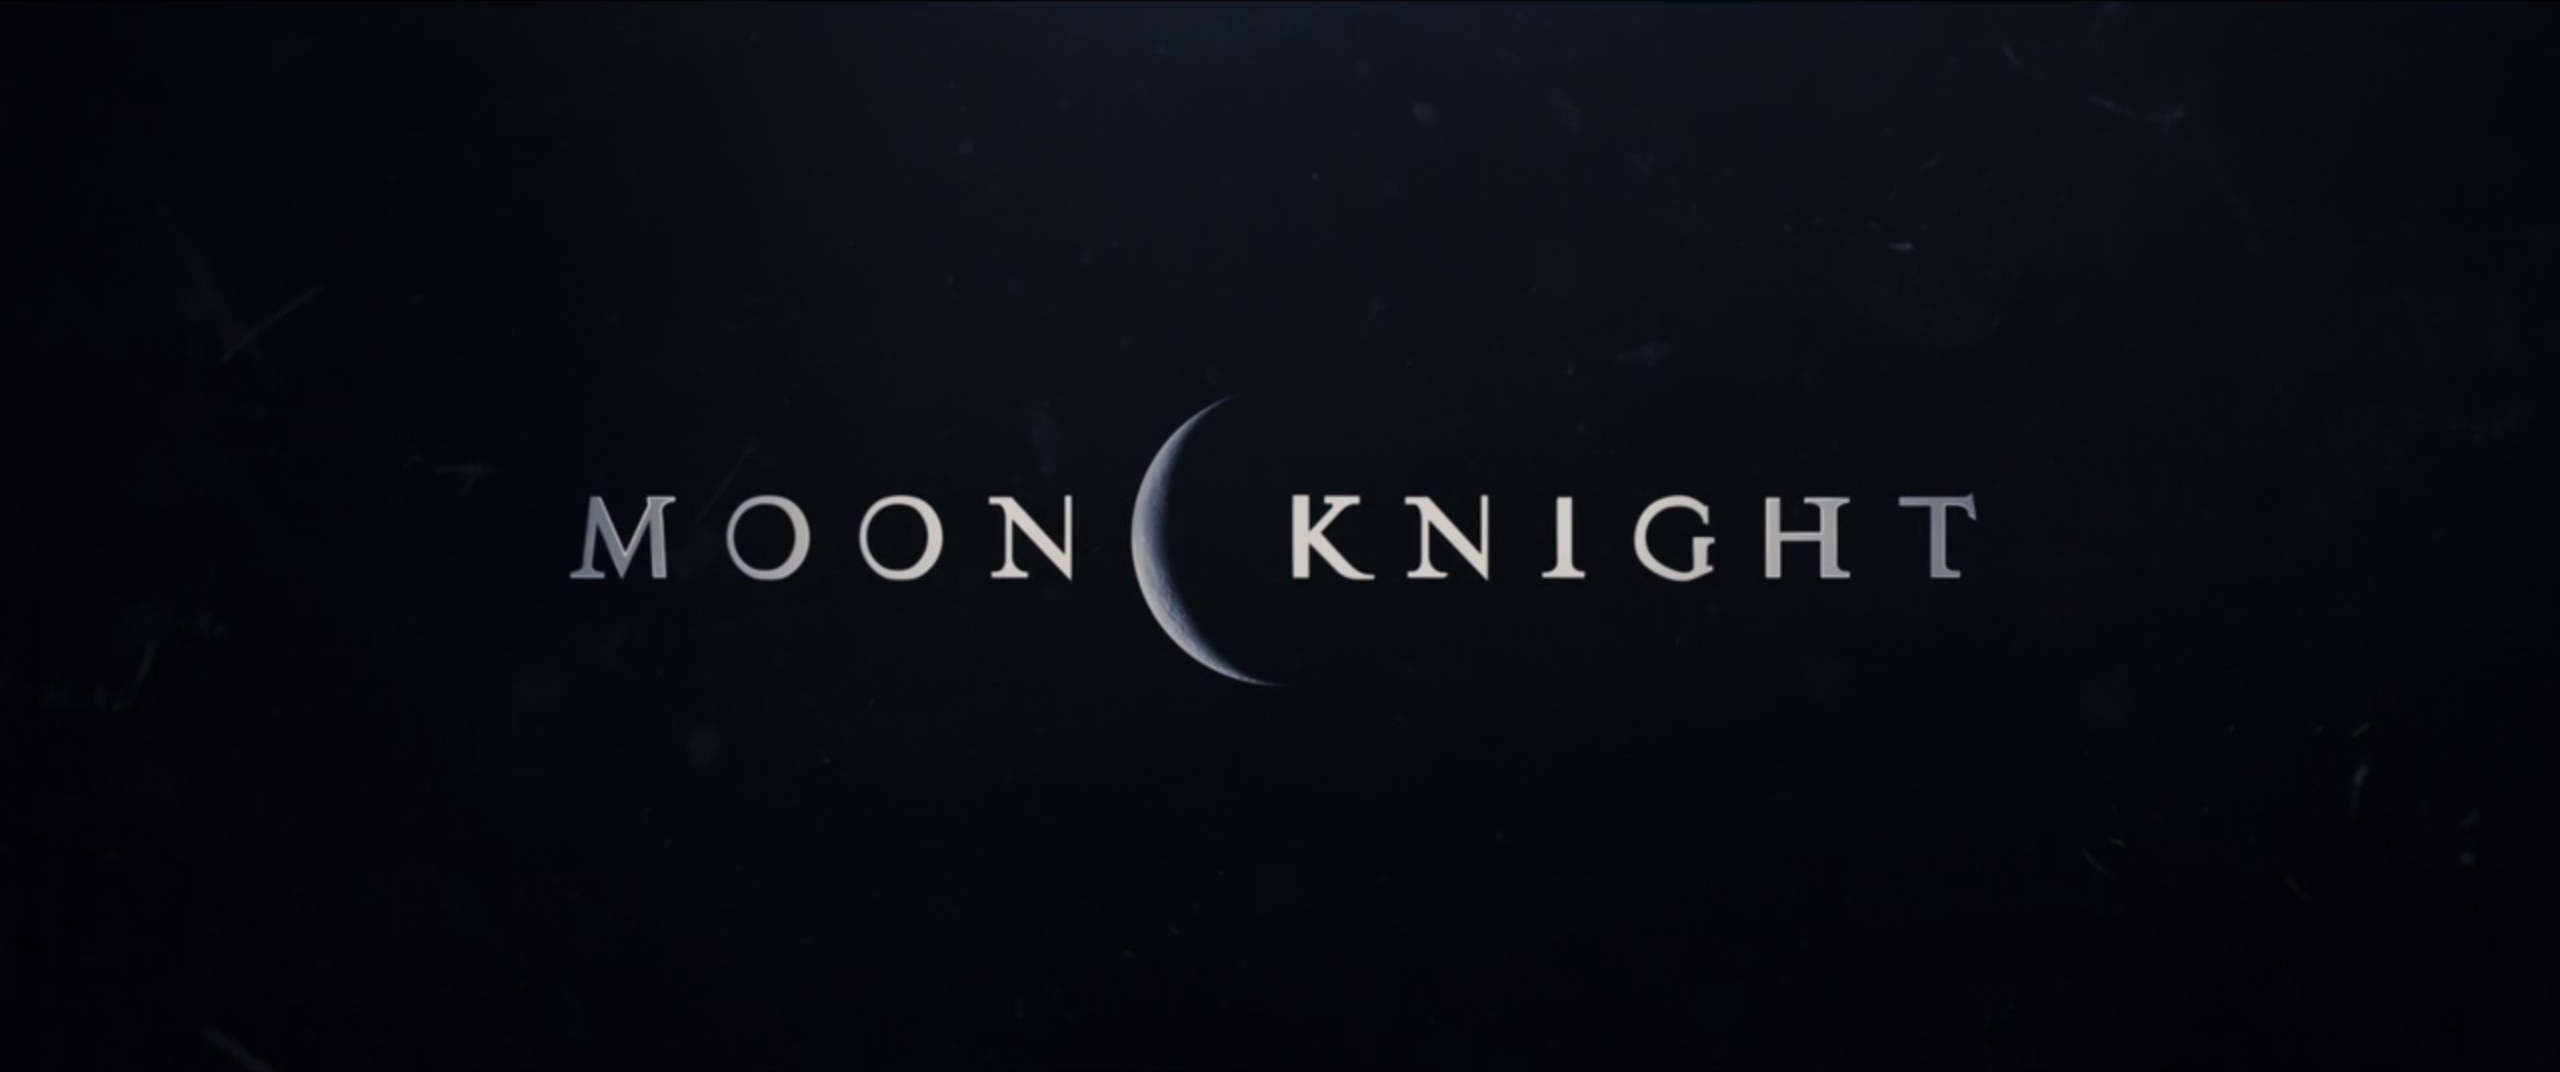 Cavaleiro da Lua: o que sabemos sobre Moon Knight, com Oscar Isaac